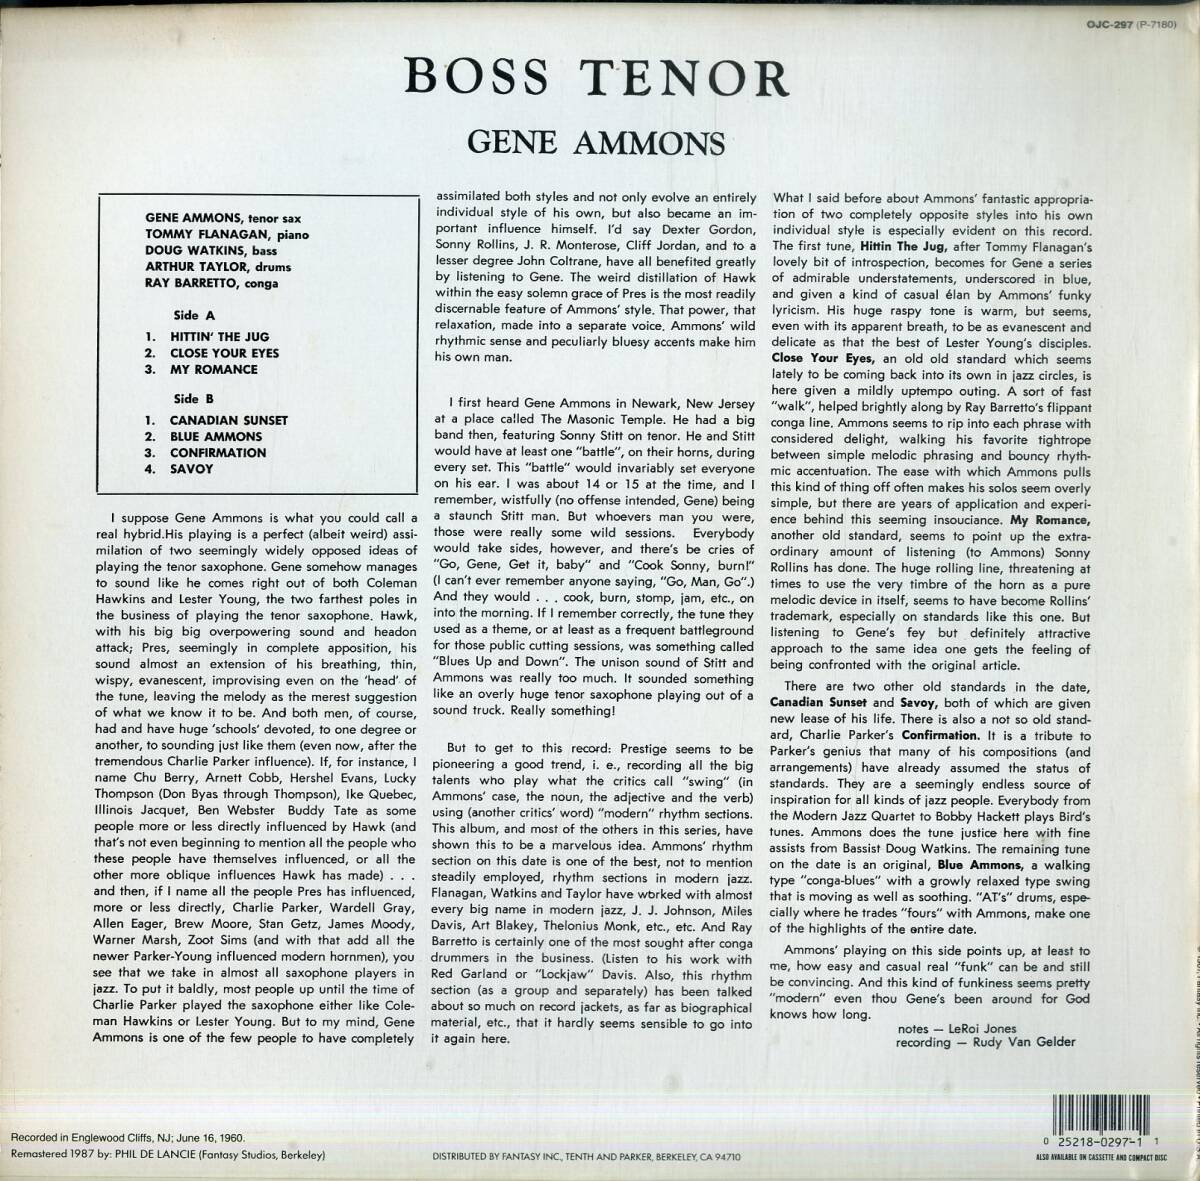 A00592775/LP/ジーン・アモンズ (GENE AMMONS)「Boss Tenor (1987年・OJC-297・ハードバップ・ソウルジャズ)」の画像2